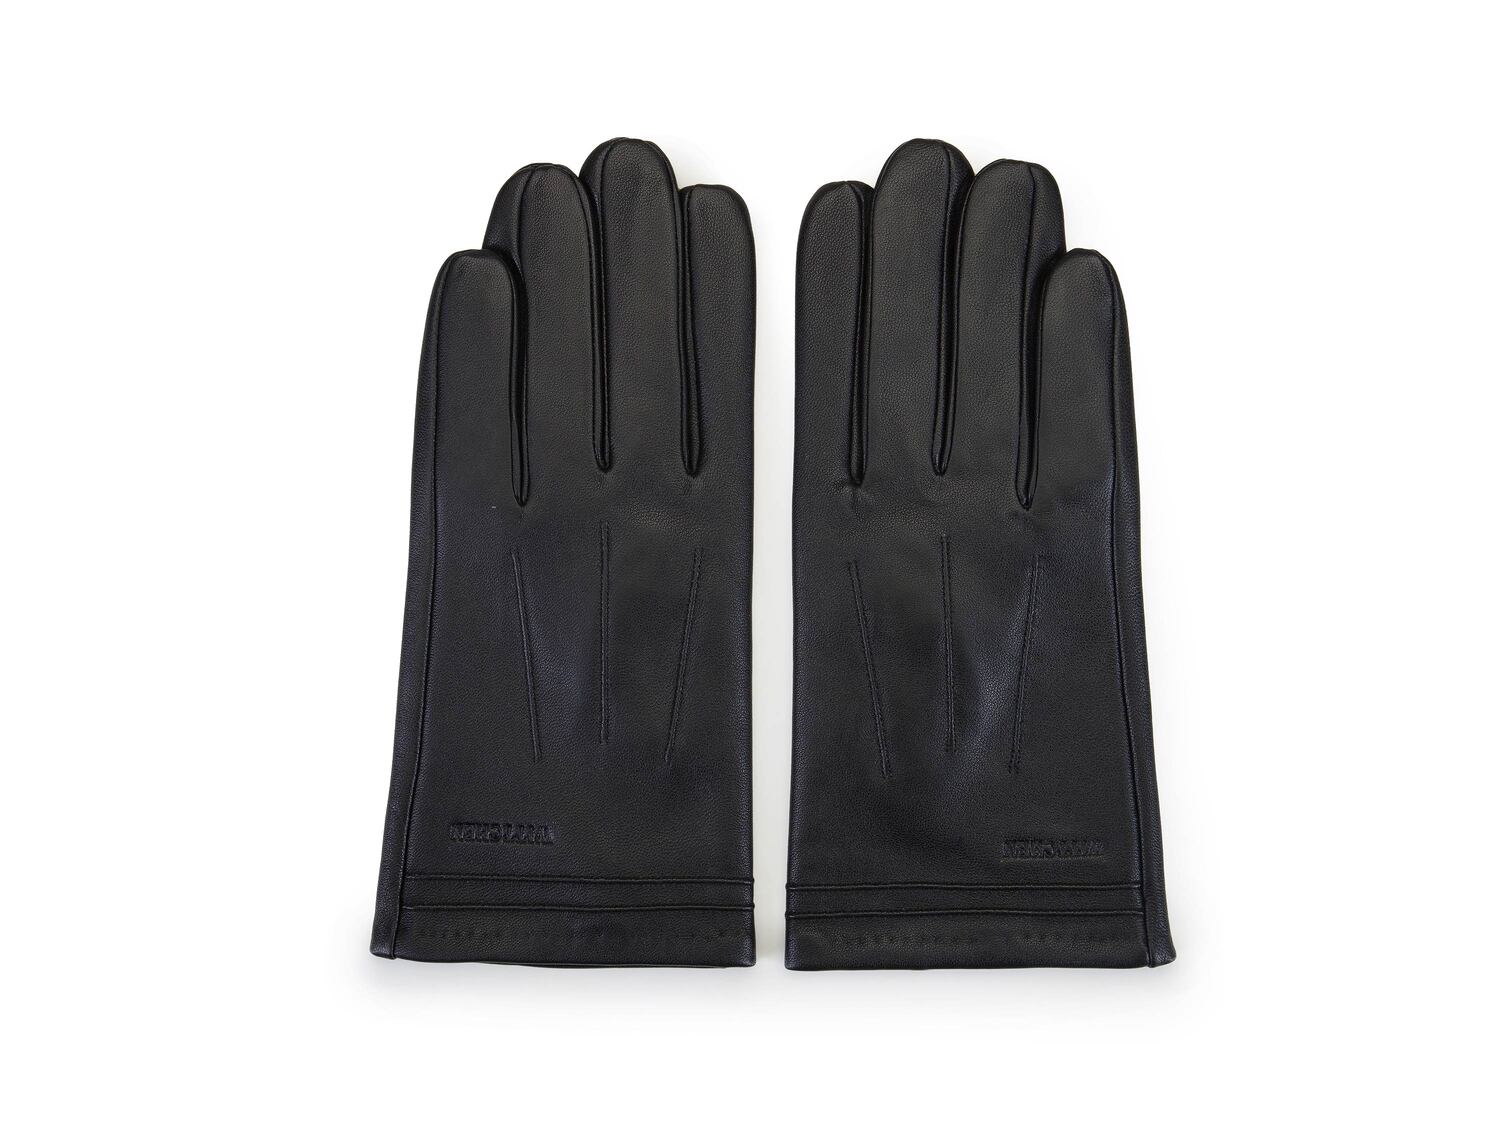 Rękawiczki męskie Wittchen, cena 89,00 PLN 
- rozmiary: M-L
- ocieplane
- materiał: ...